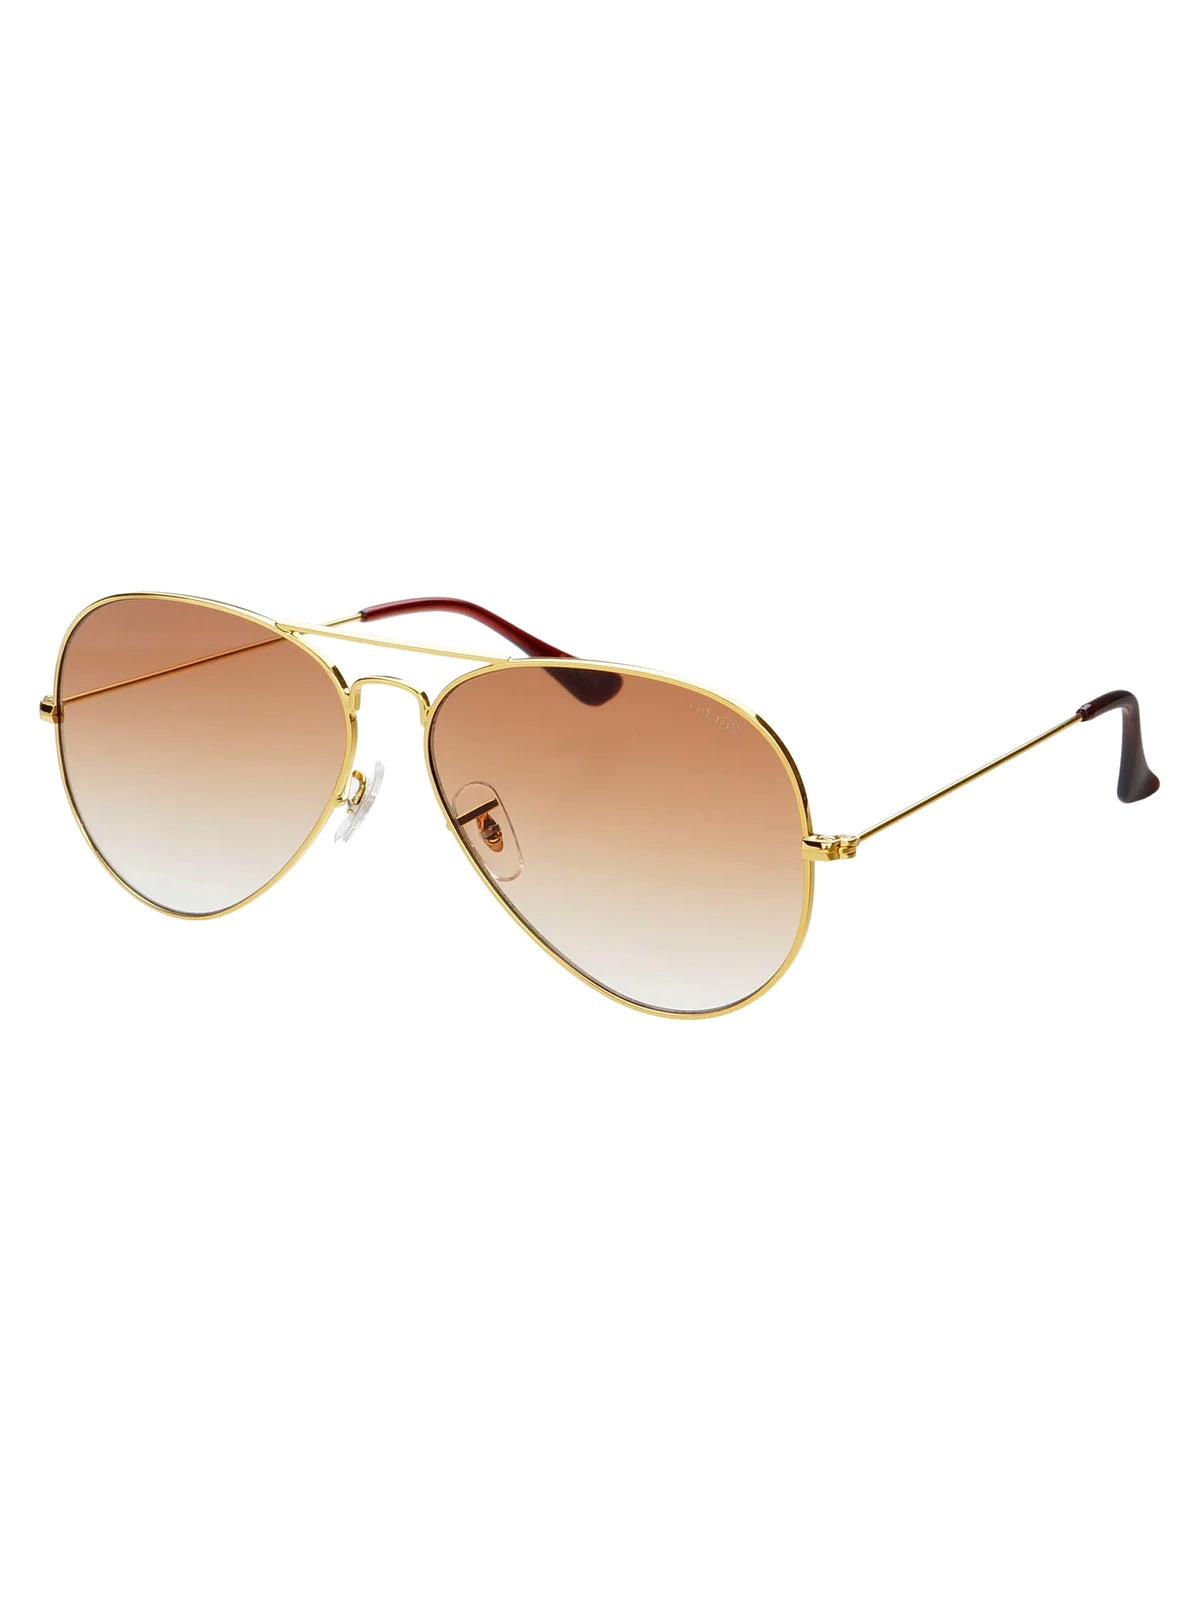 Morgan Aviator Sunglasses